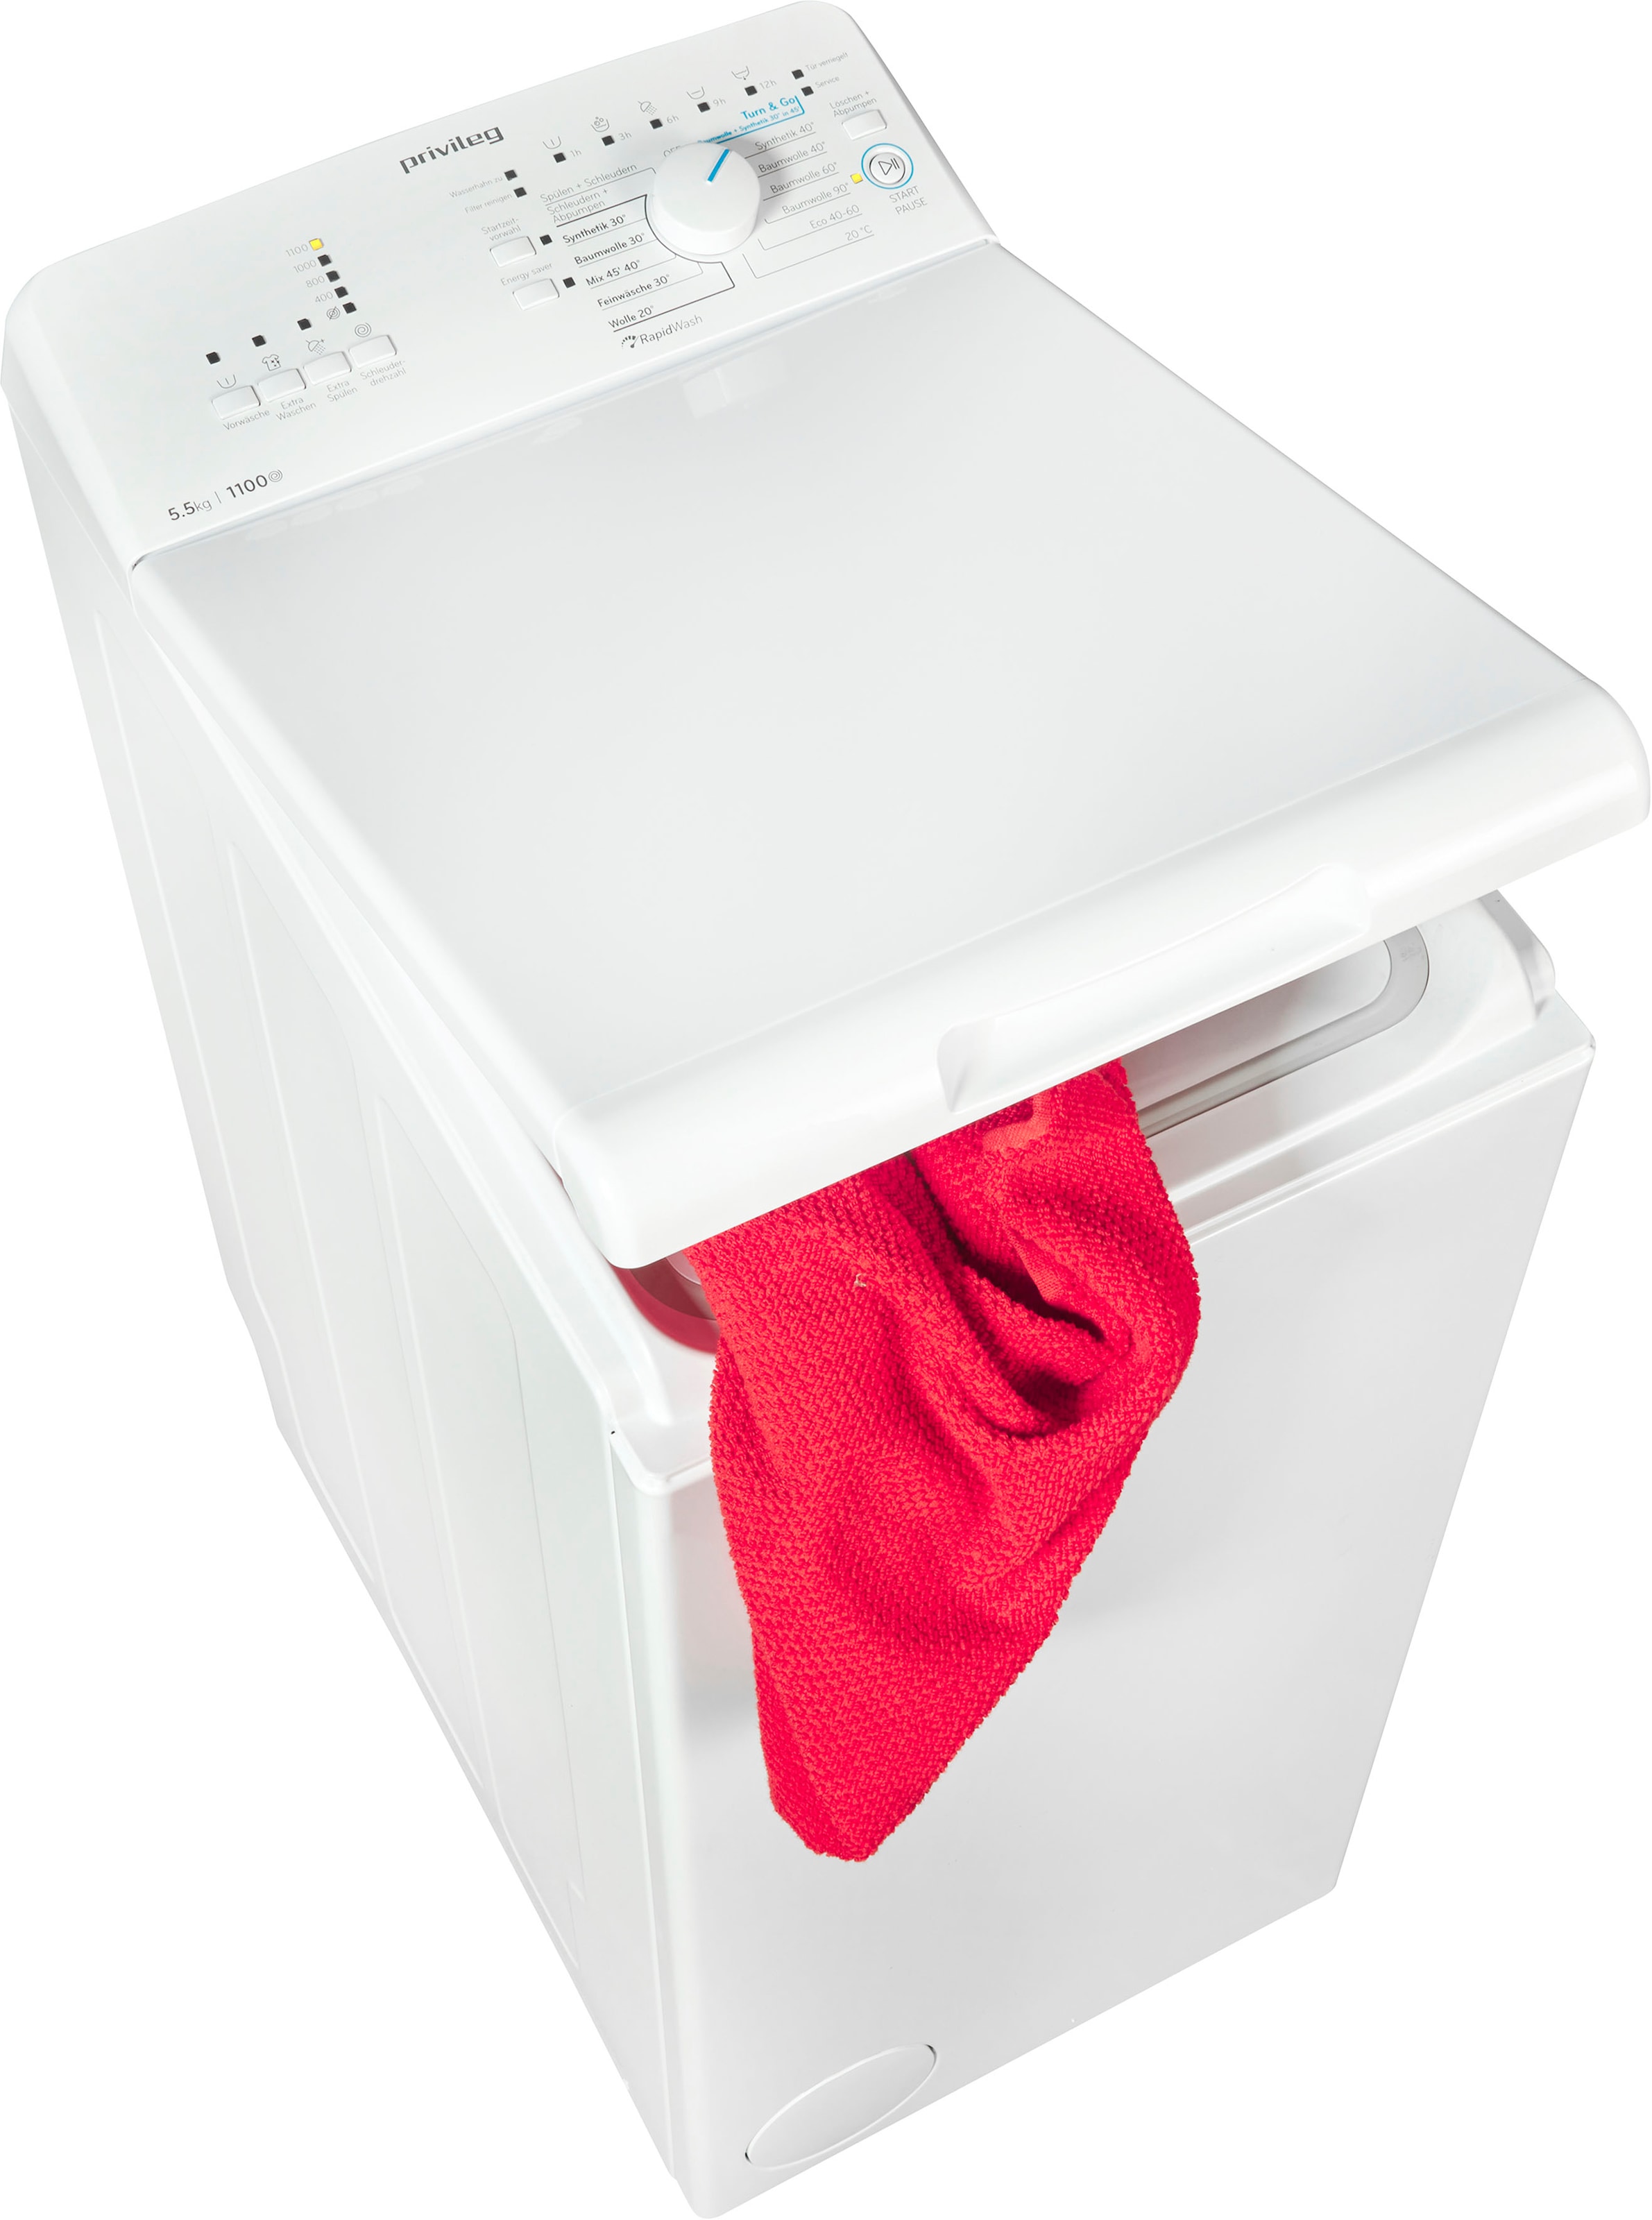 Privileg Waschmaschine Shop OTTO kg, DE, LD55 min 5,5 Toplader »PWT im LD55 jetzt 1100 PWT U/ DE«, Online